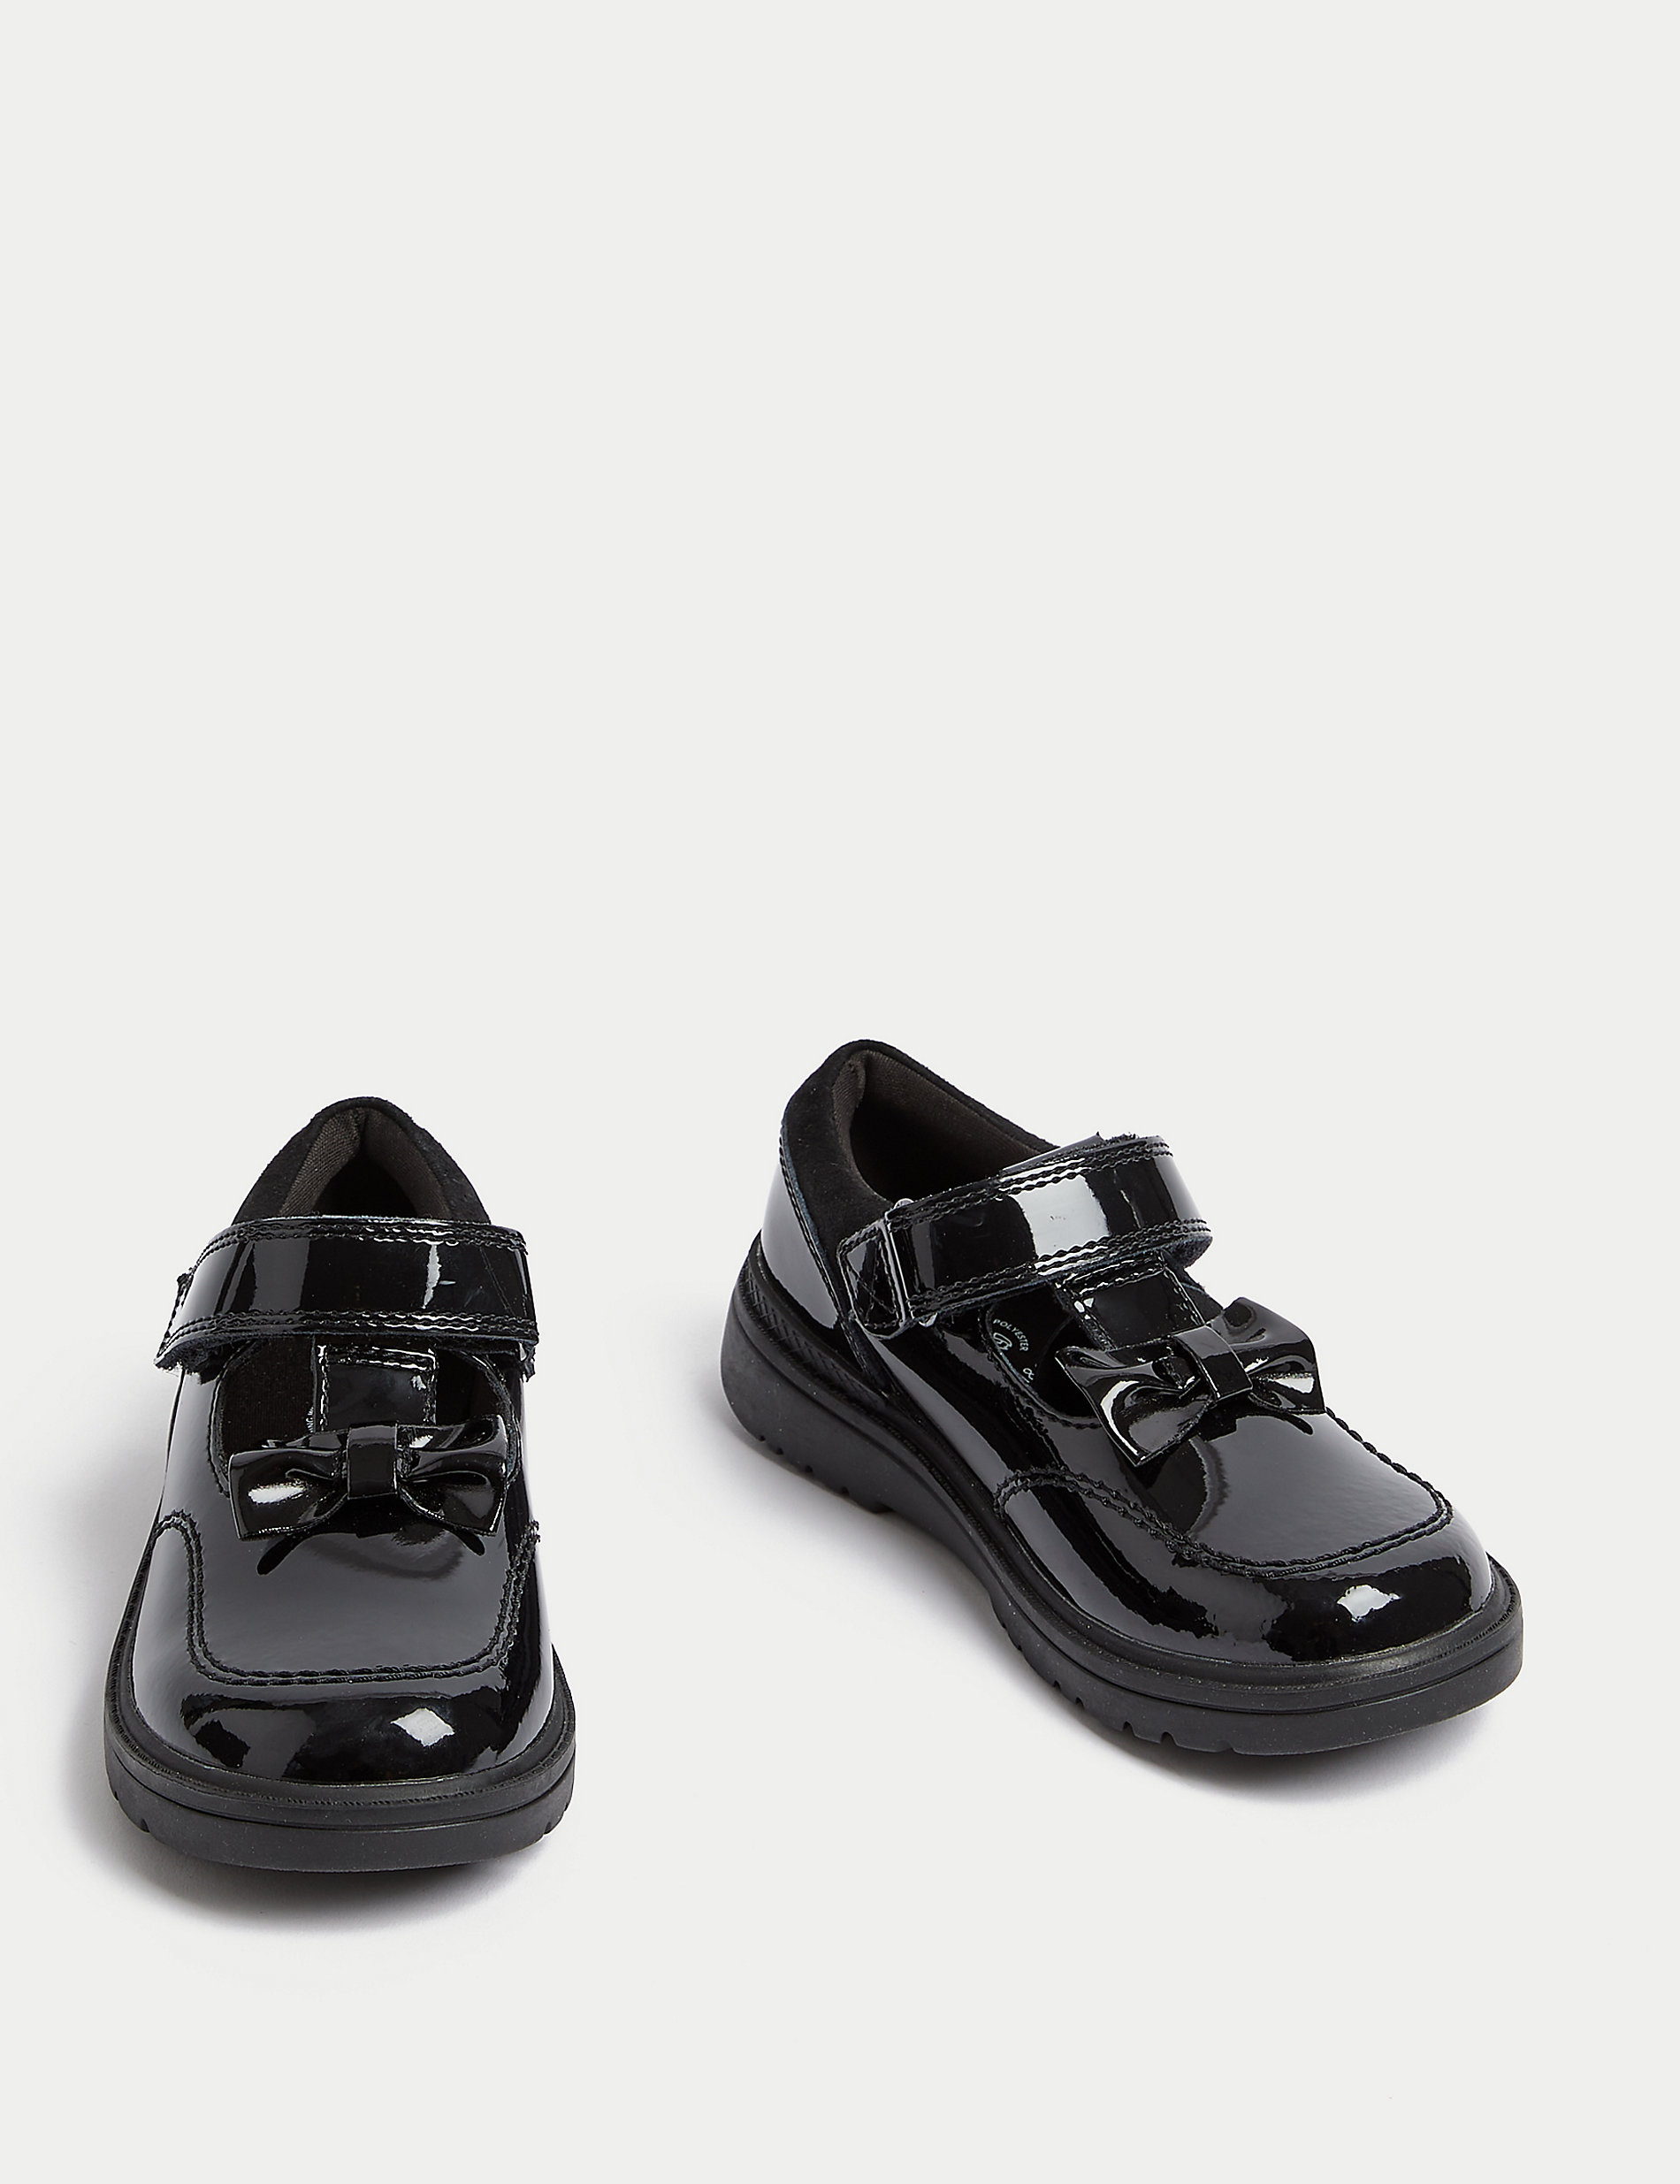 Zapatos escolares infantiles de piel con tira en T (8 pequeño-1 grande)